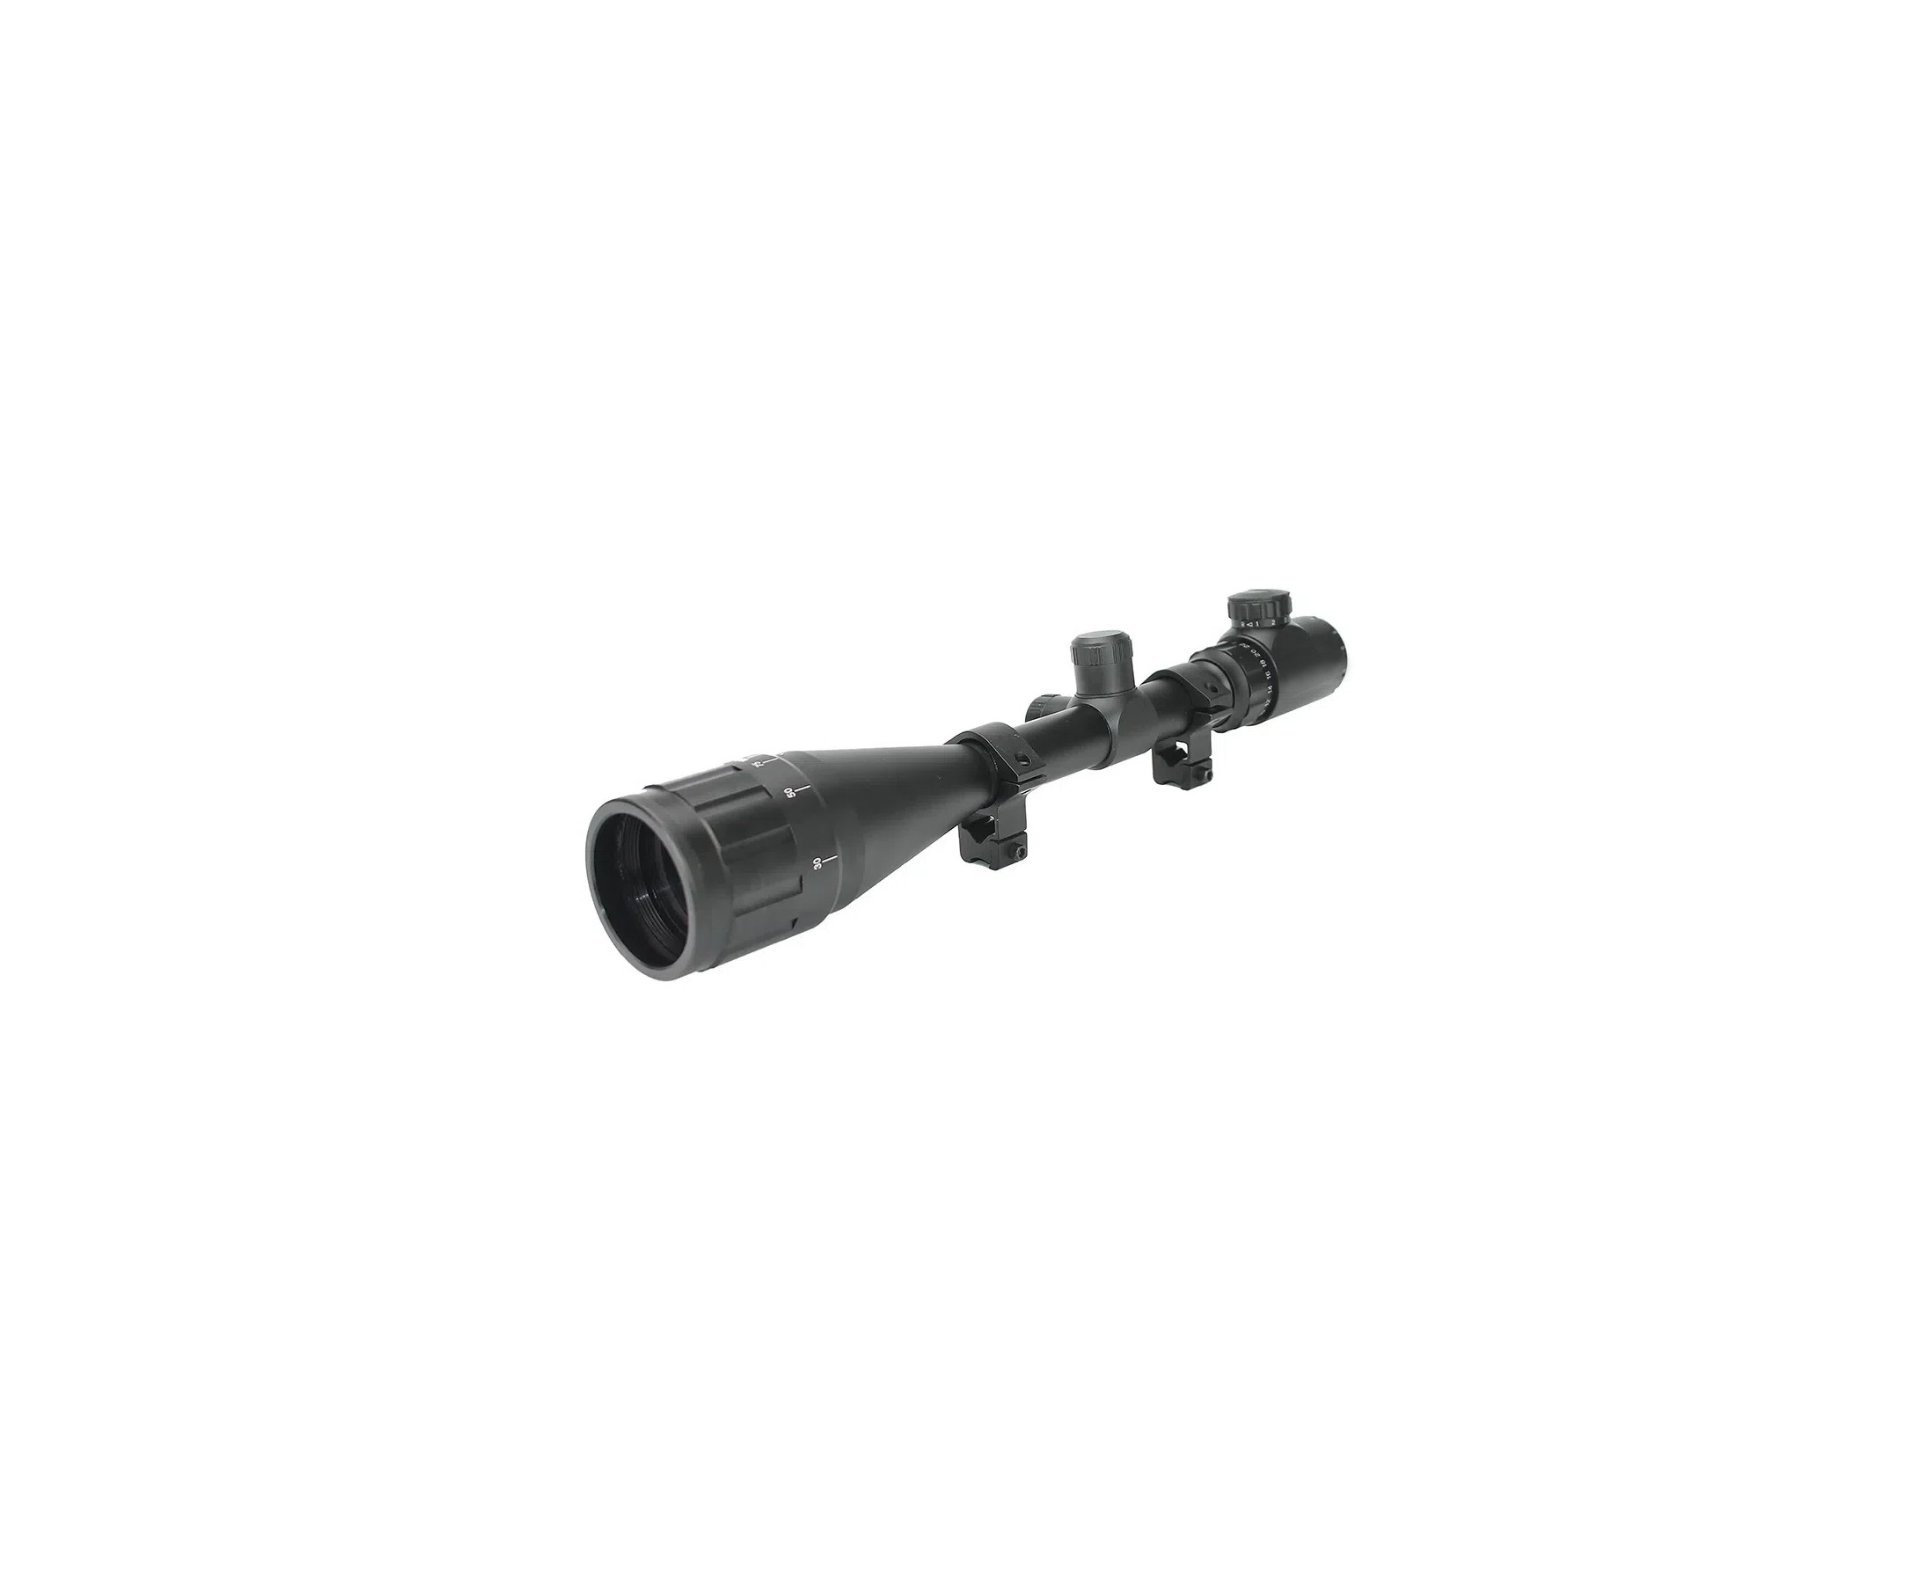 Carabina de Pressão PCP Alpha 6.35mm Black Regulagem Potencia - Nova Vista + Bomba + Luneta 6-24x50